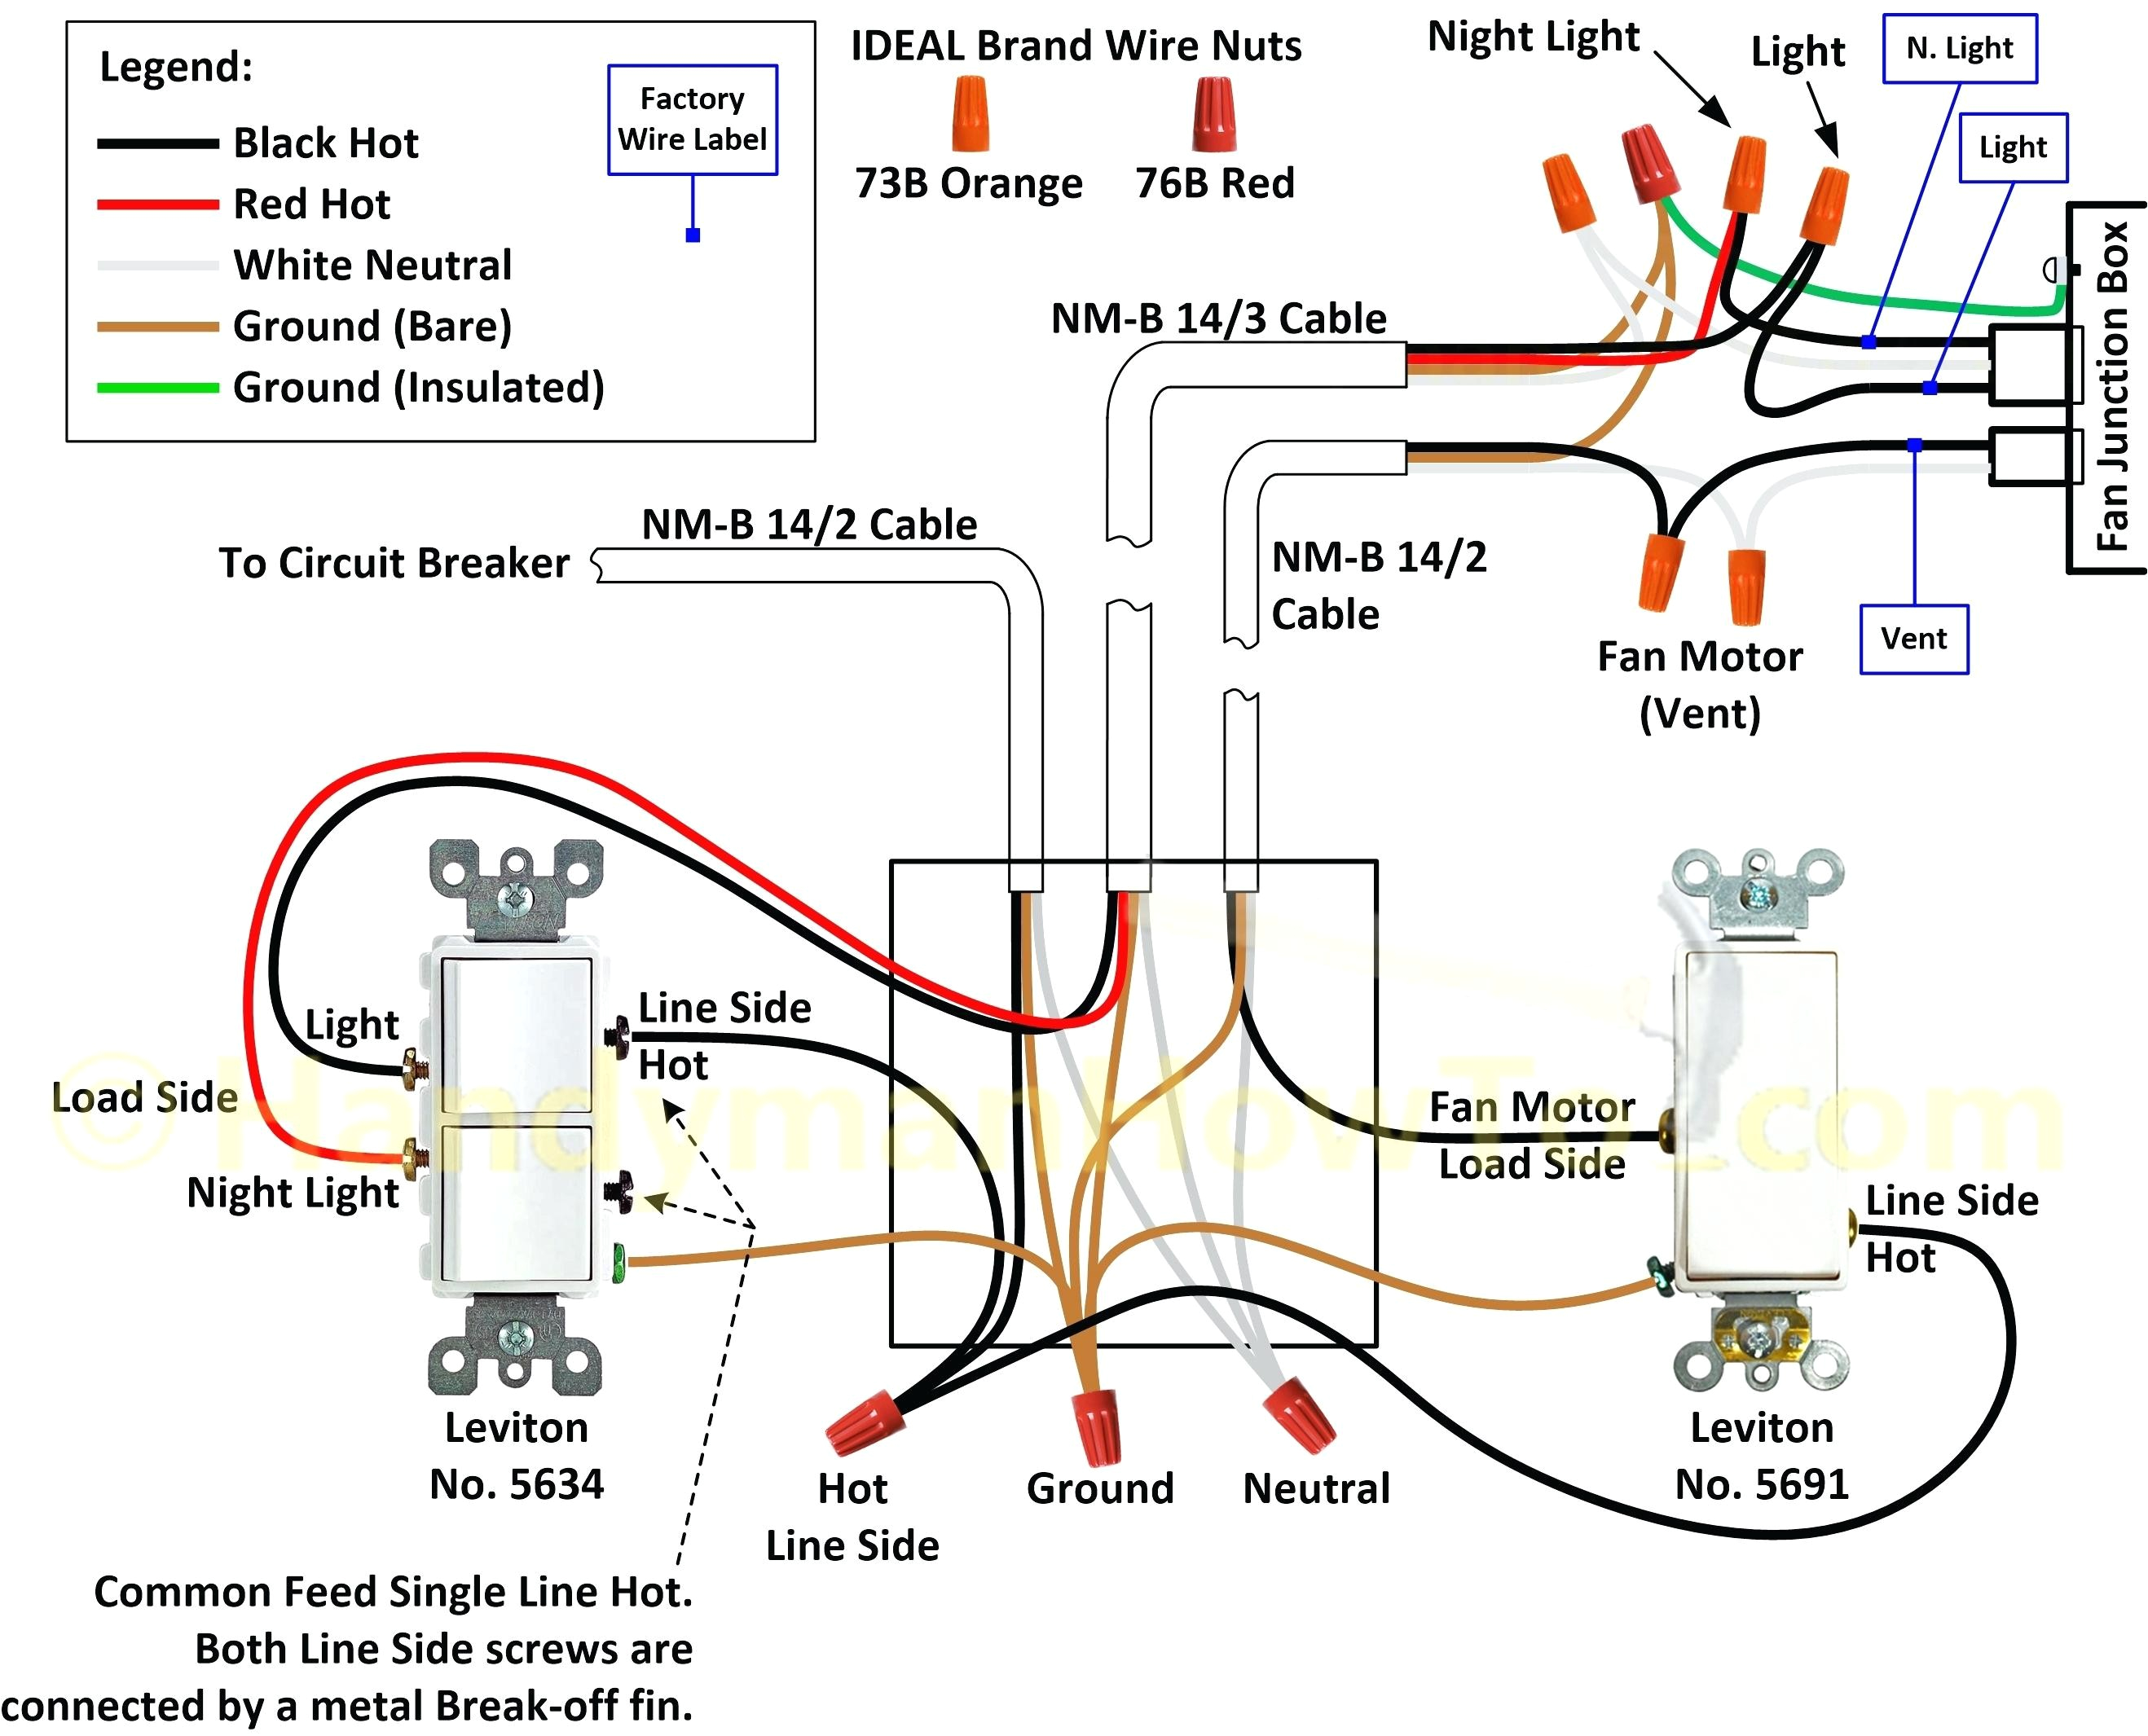 2 sd electric motor wiring diagram wiring diagram view ac motor sd picture wiring diagram century